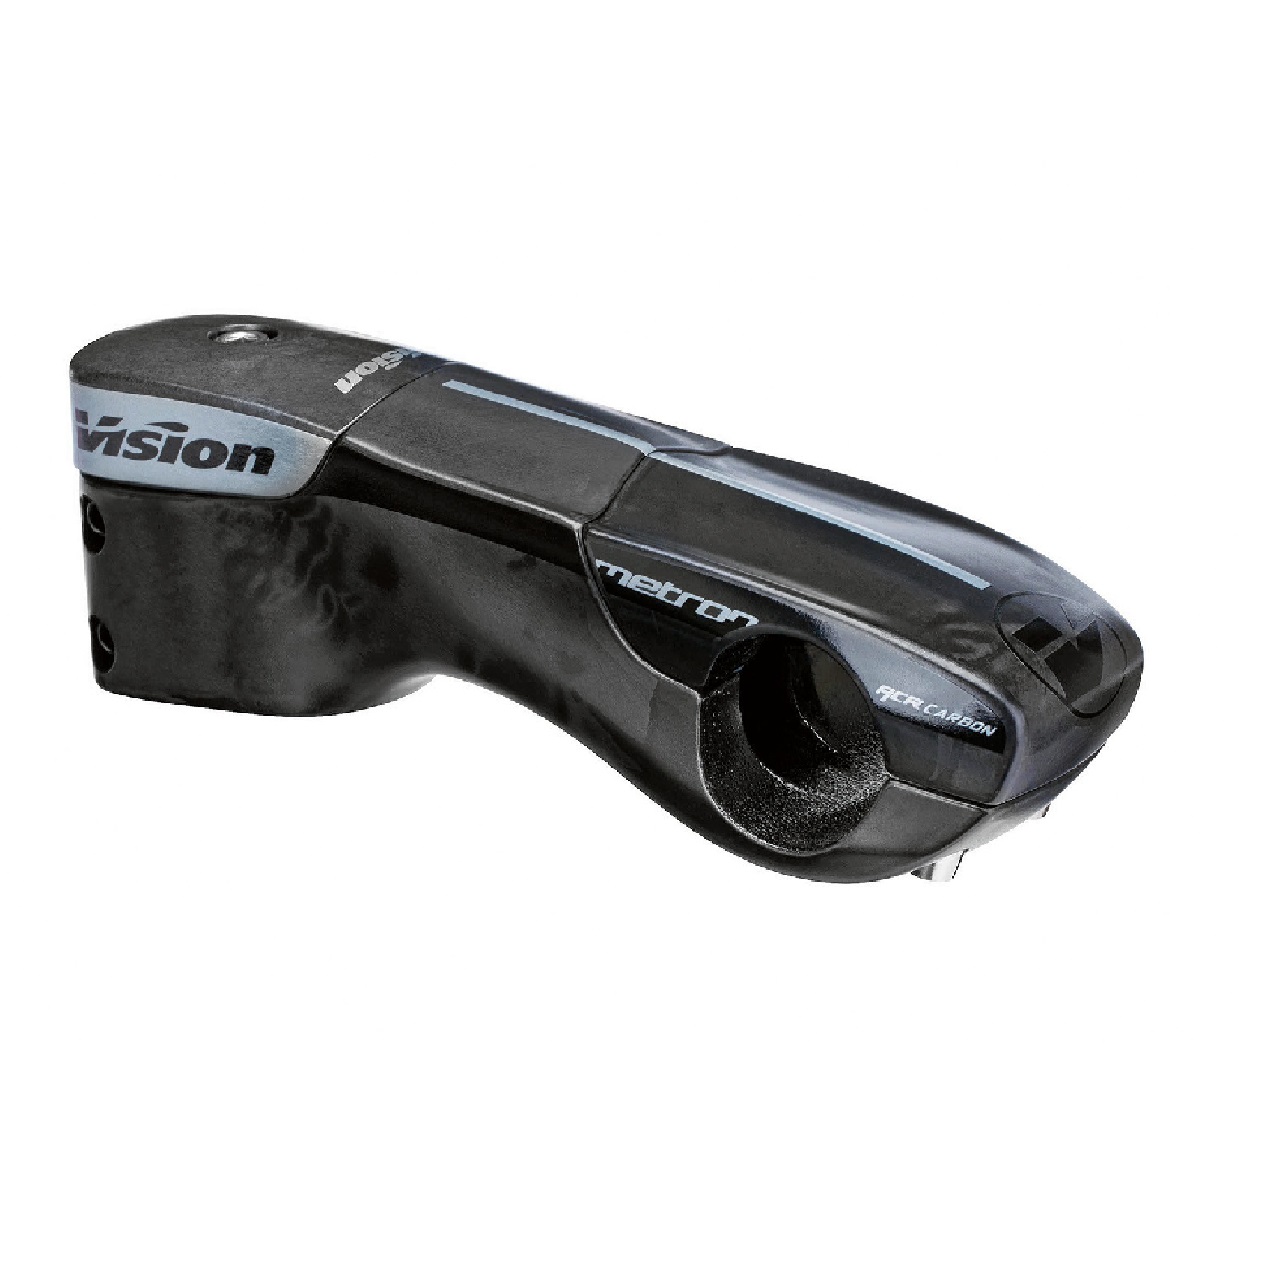 Vision Metron Monocoque Carbon ACR Bike Stem 31.8 x -6 ‚